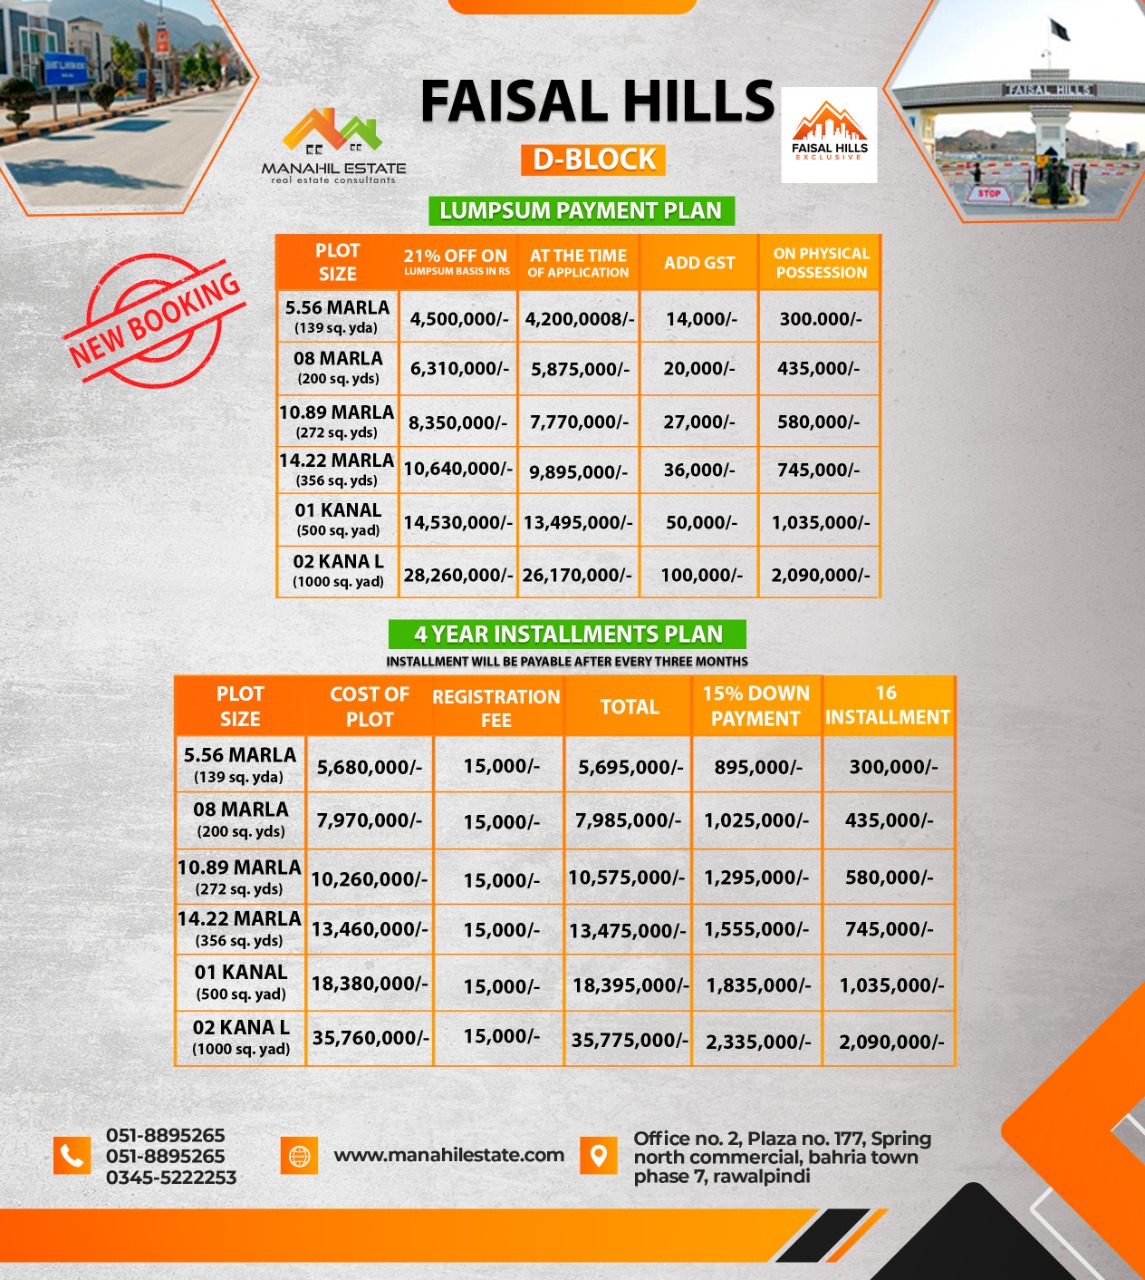 Faisal Hills D Block Payment Plan